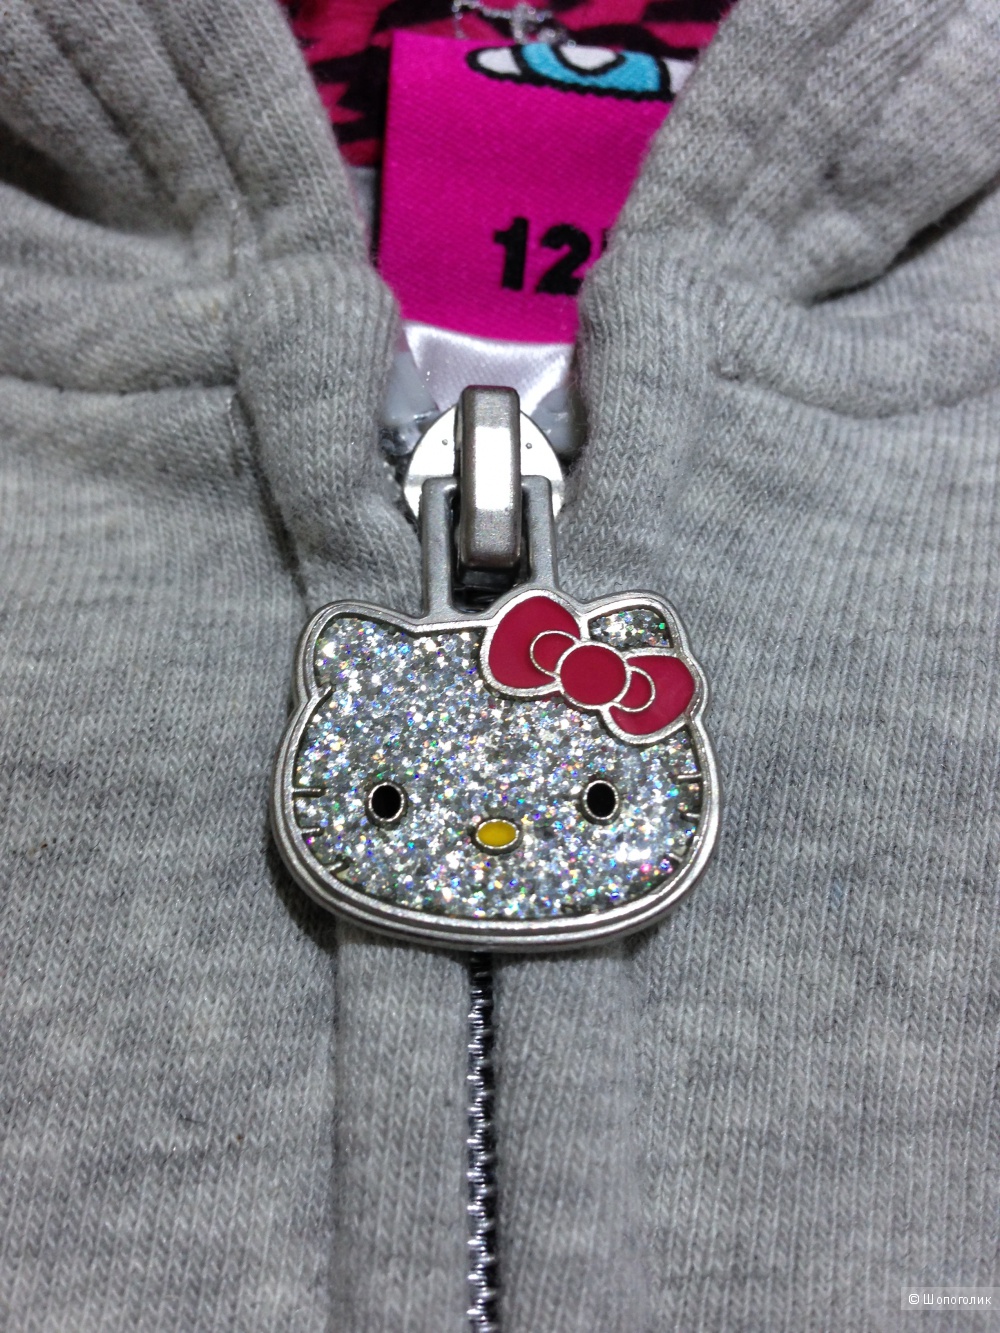 Hello Kitty флисовый костюмчик для маленкой модницы 9-12 мес ОРИГИНАЛ.Новый